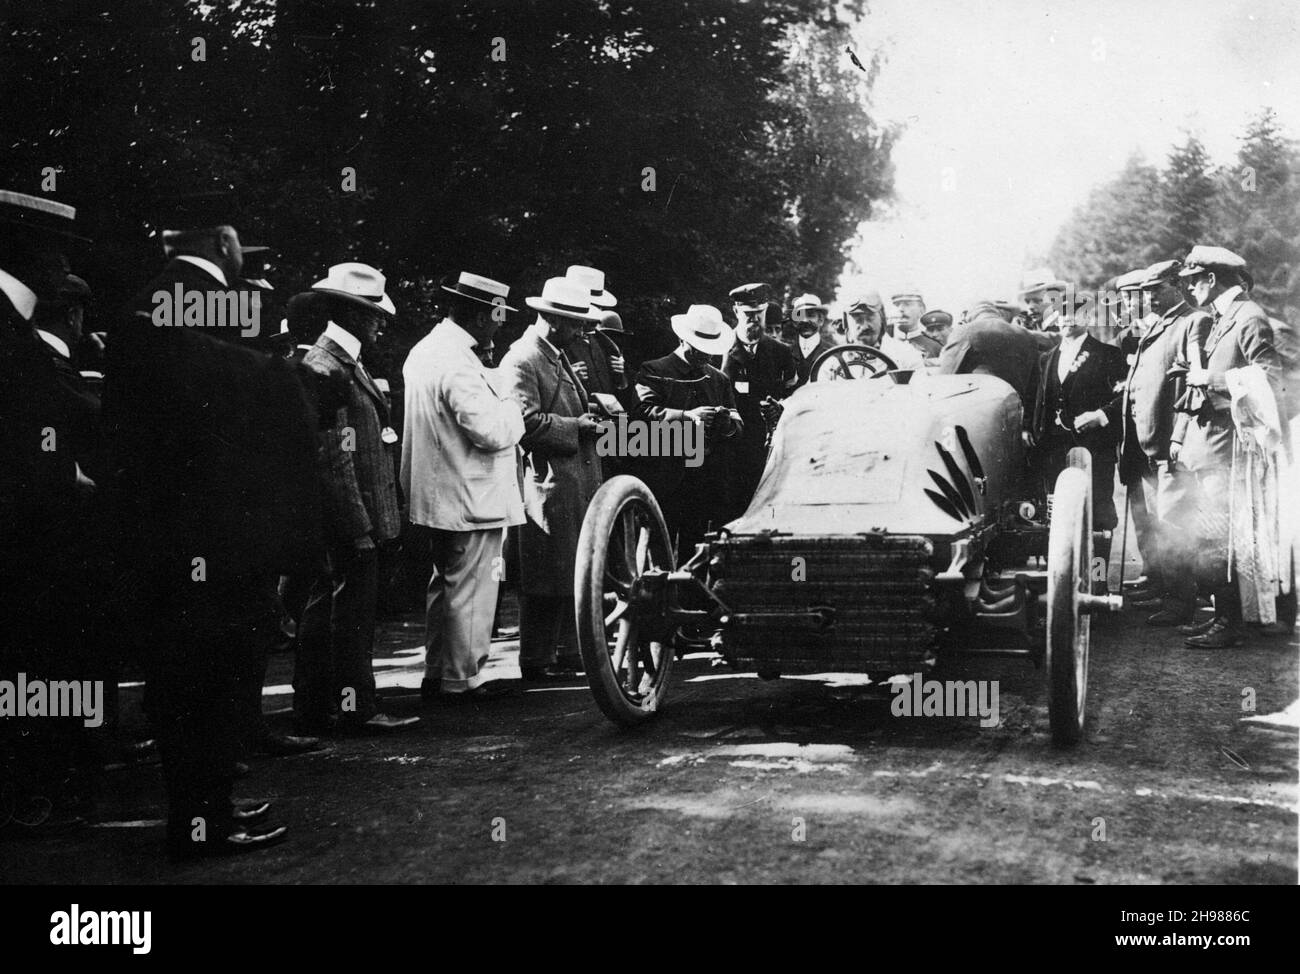 Pfeife des belgischen Rennfahrers Lucien Hautvast beim Gordon Bennett Cup 1904 in Homburg, Deutschland. Hautvast beendete das Rennen auf dem sechsten Platz. Stockfoto